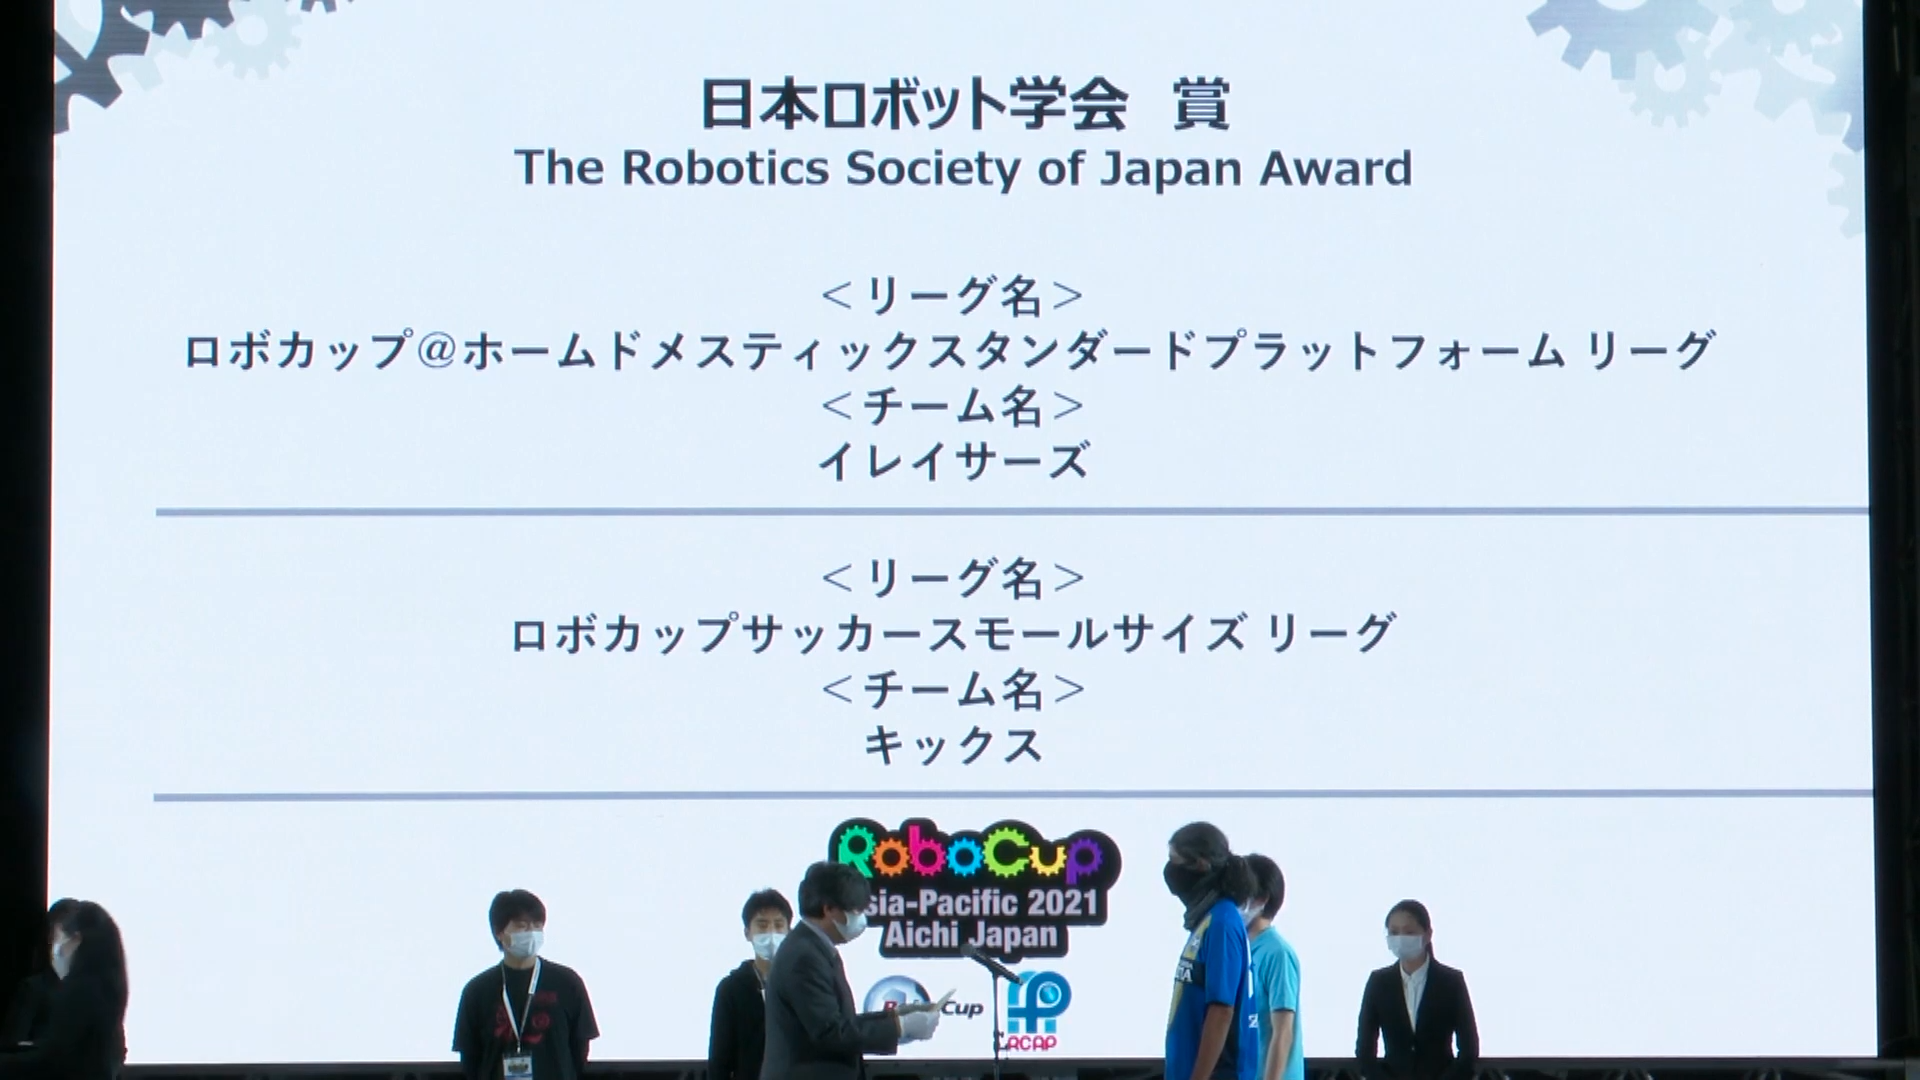 The Robotics Society of Japan Award